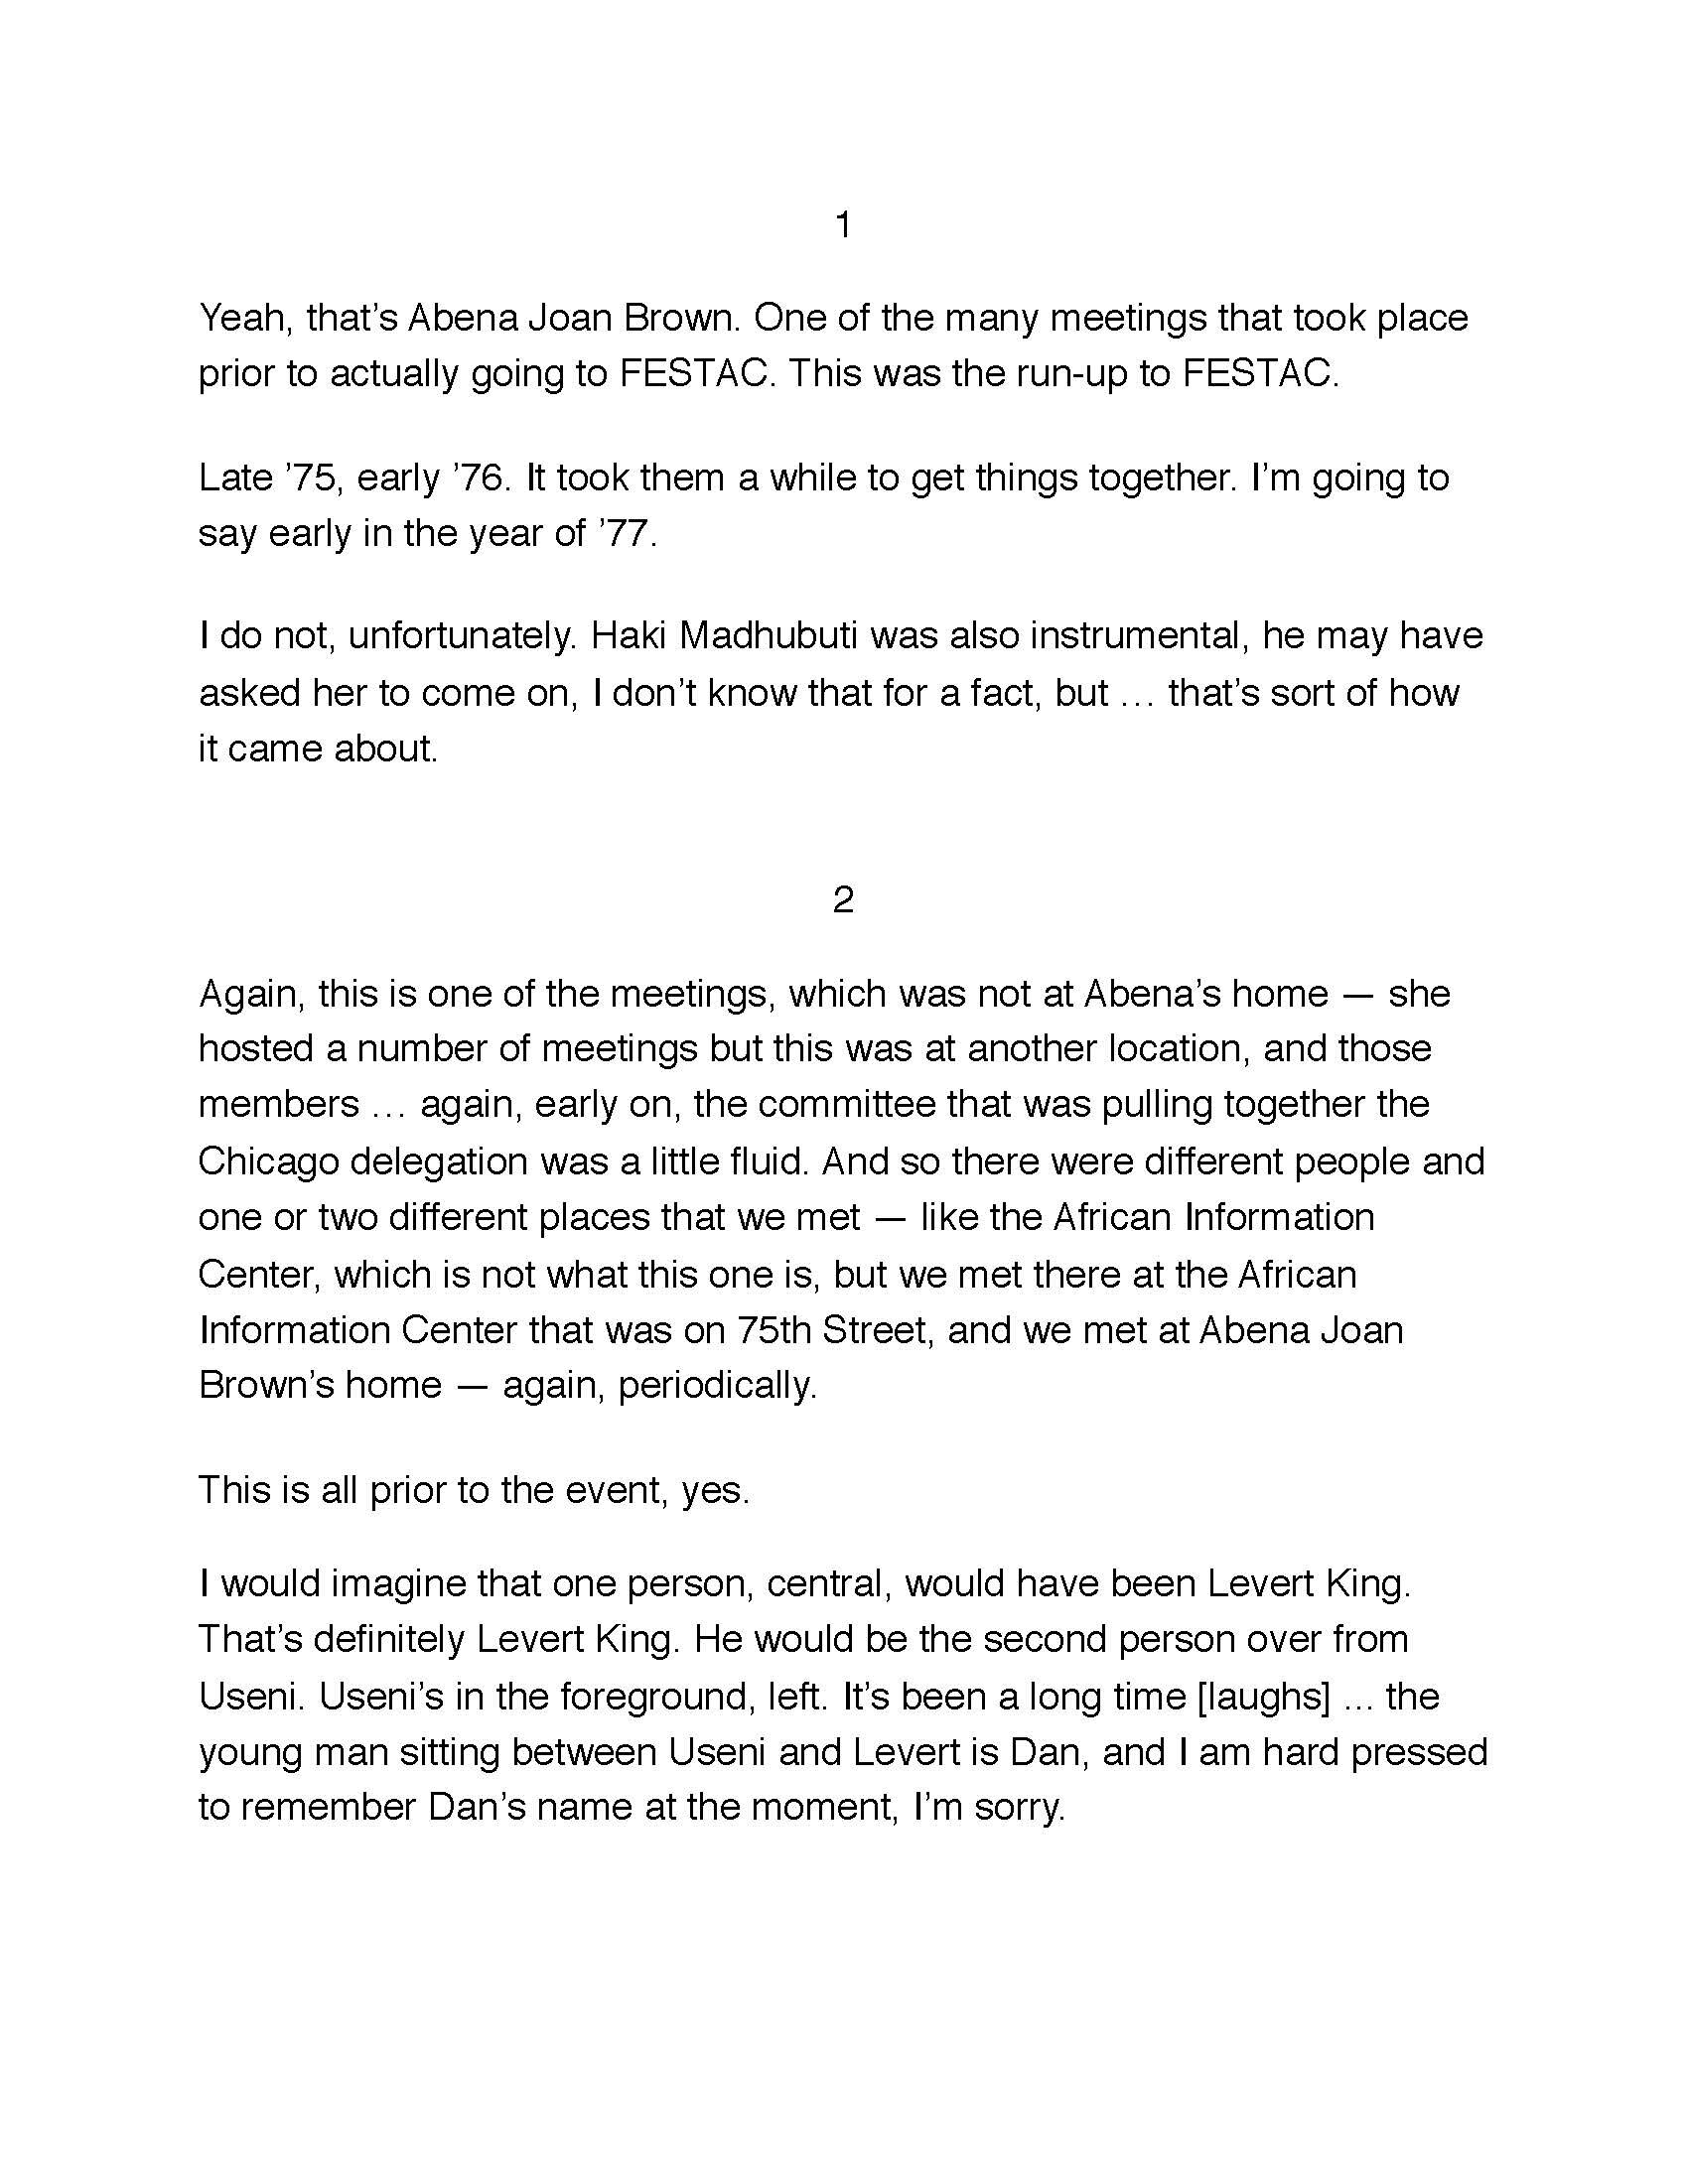 Stock, A. - Kofi Moyo interview transcript (final)_Page_01.jpg